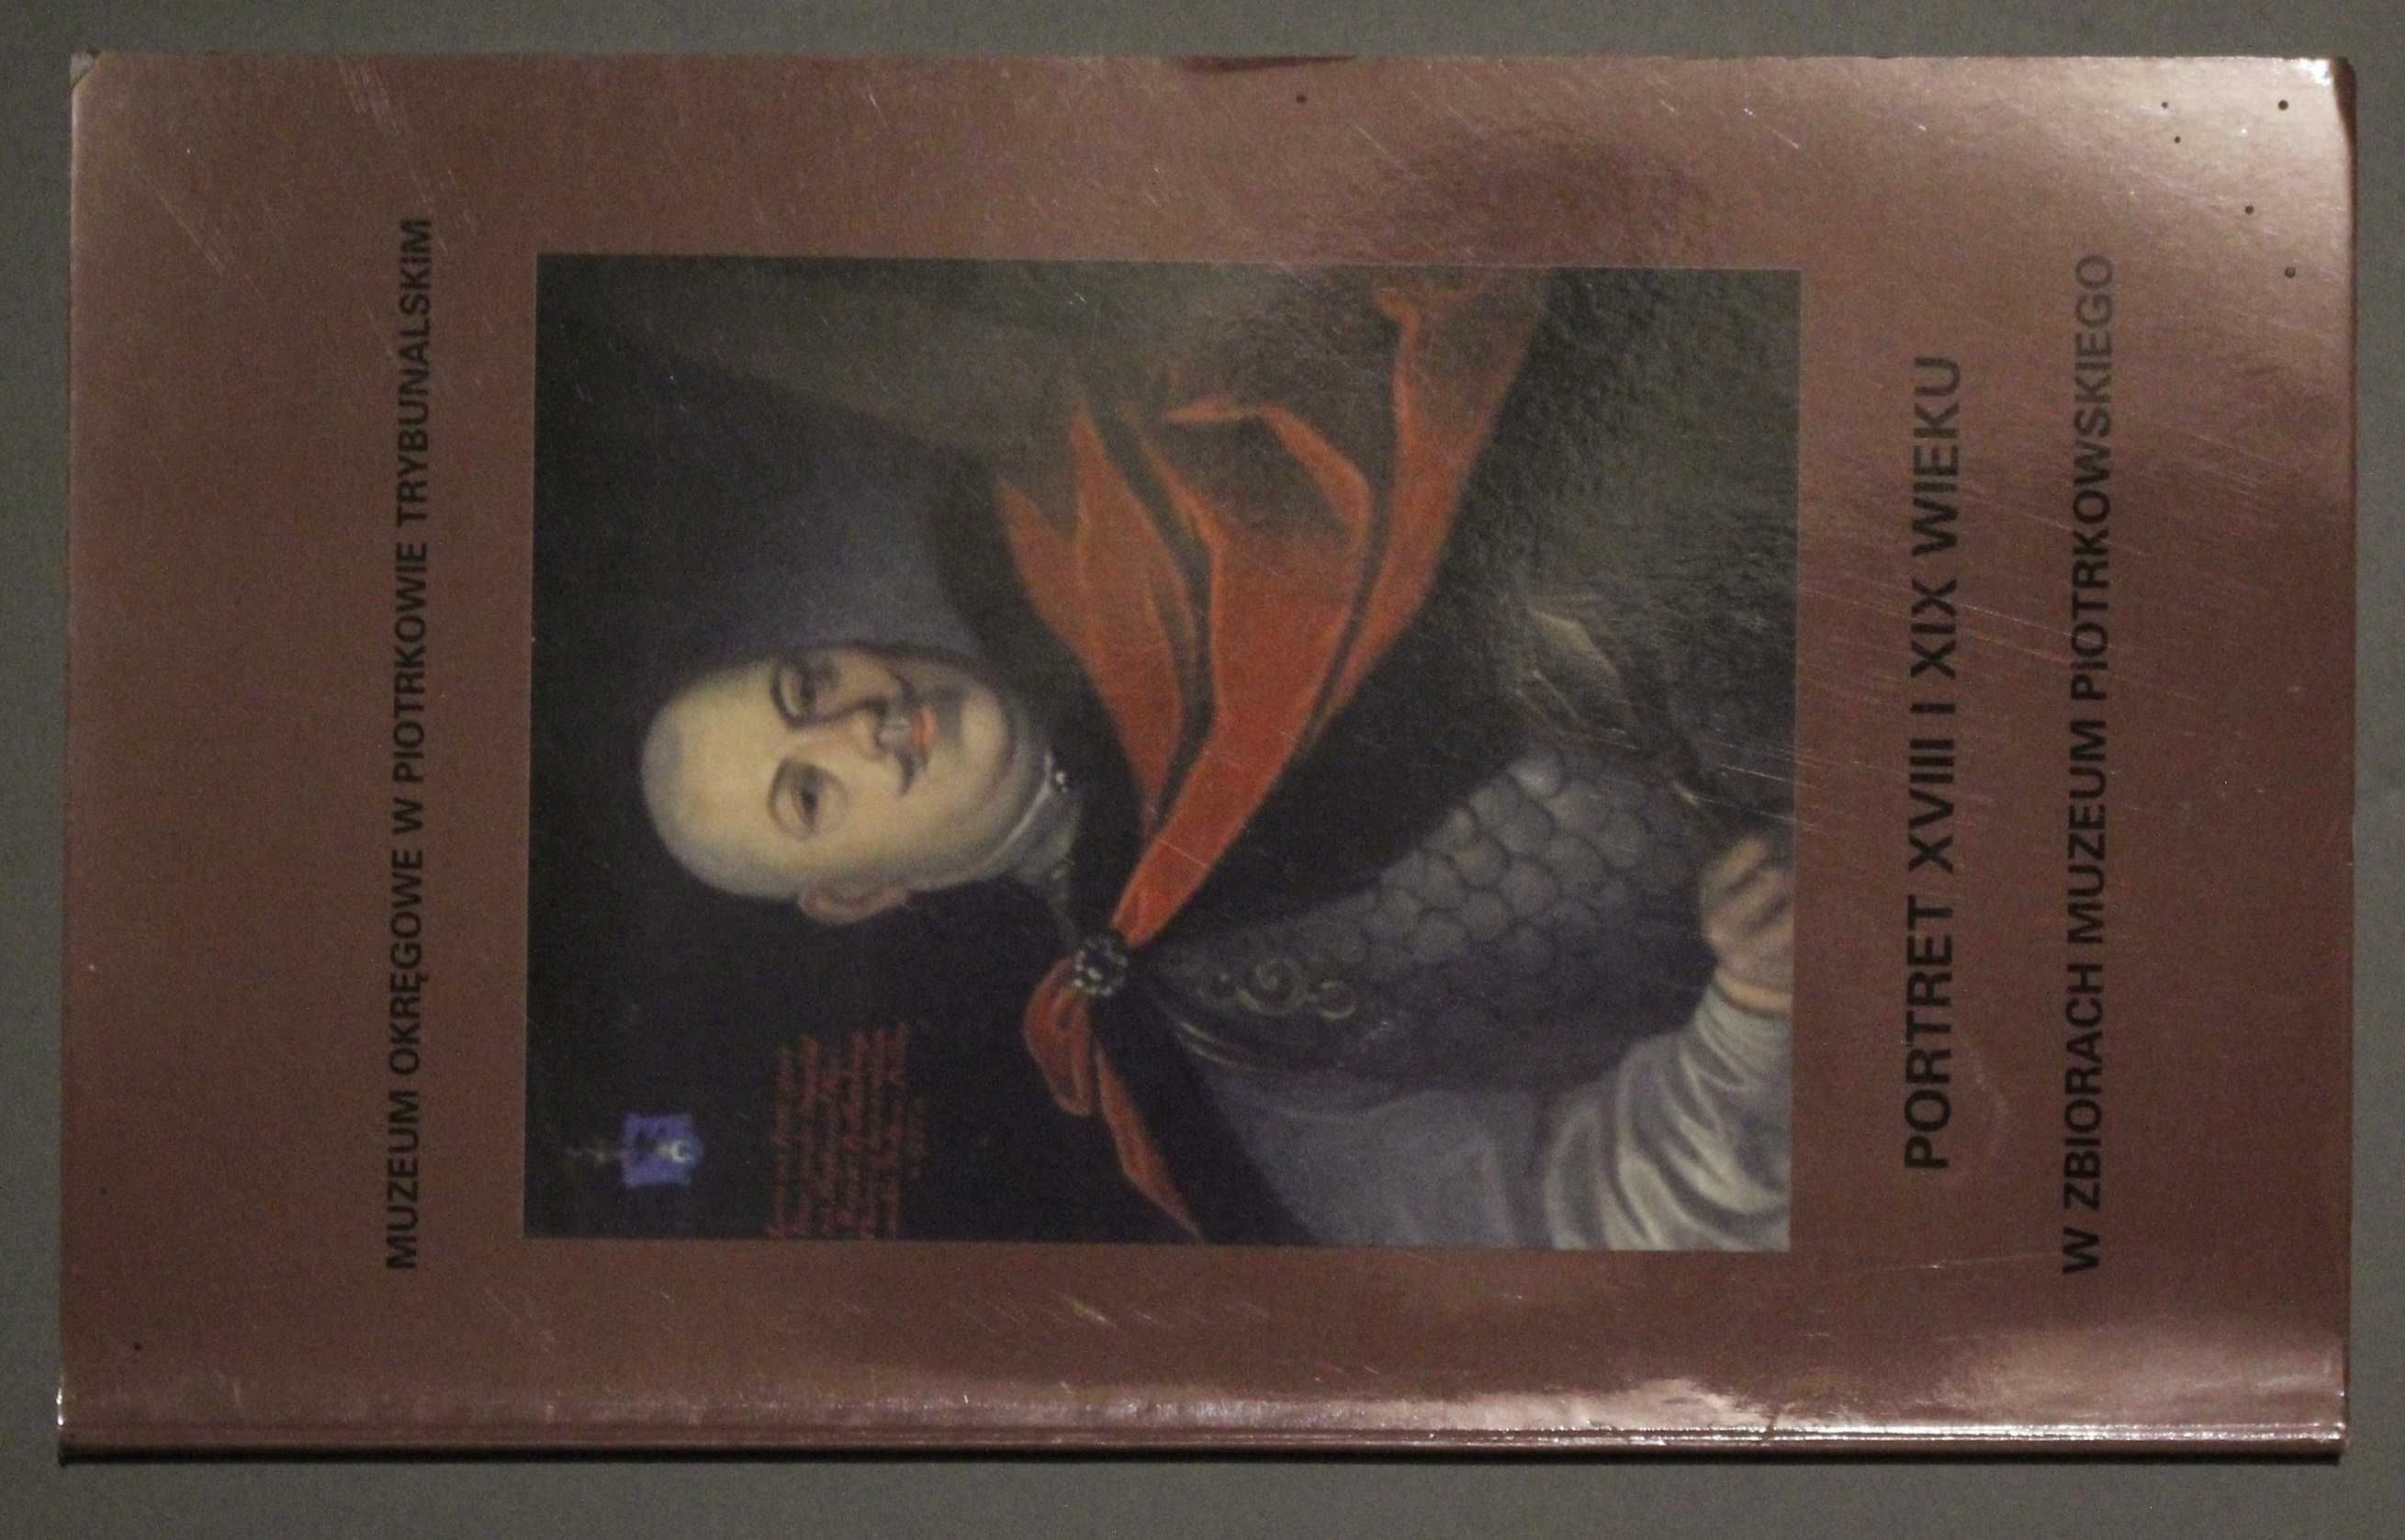 PORTRET XVIII-XIX wieku w zbiorach Muzeum Piotrkowskiego 1996 katalog